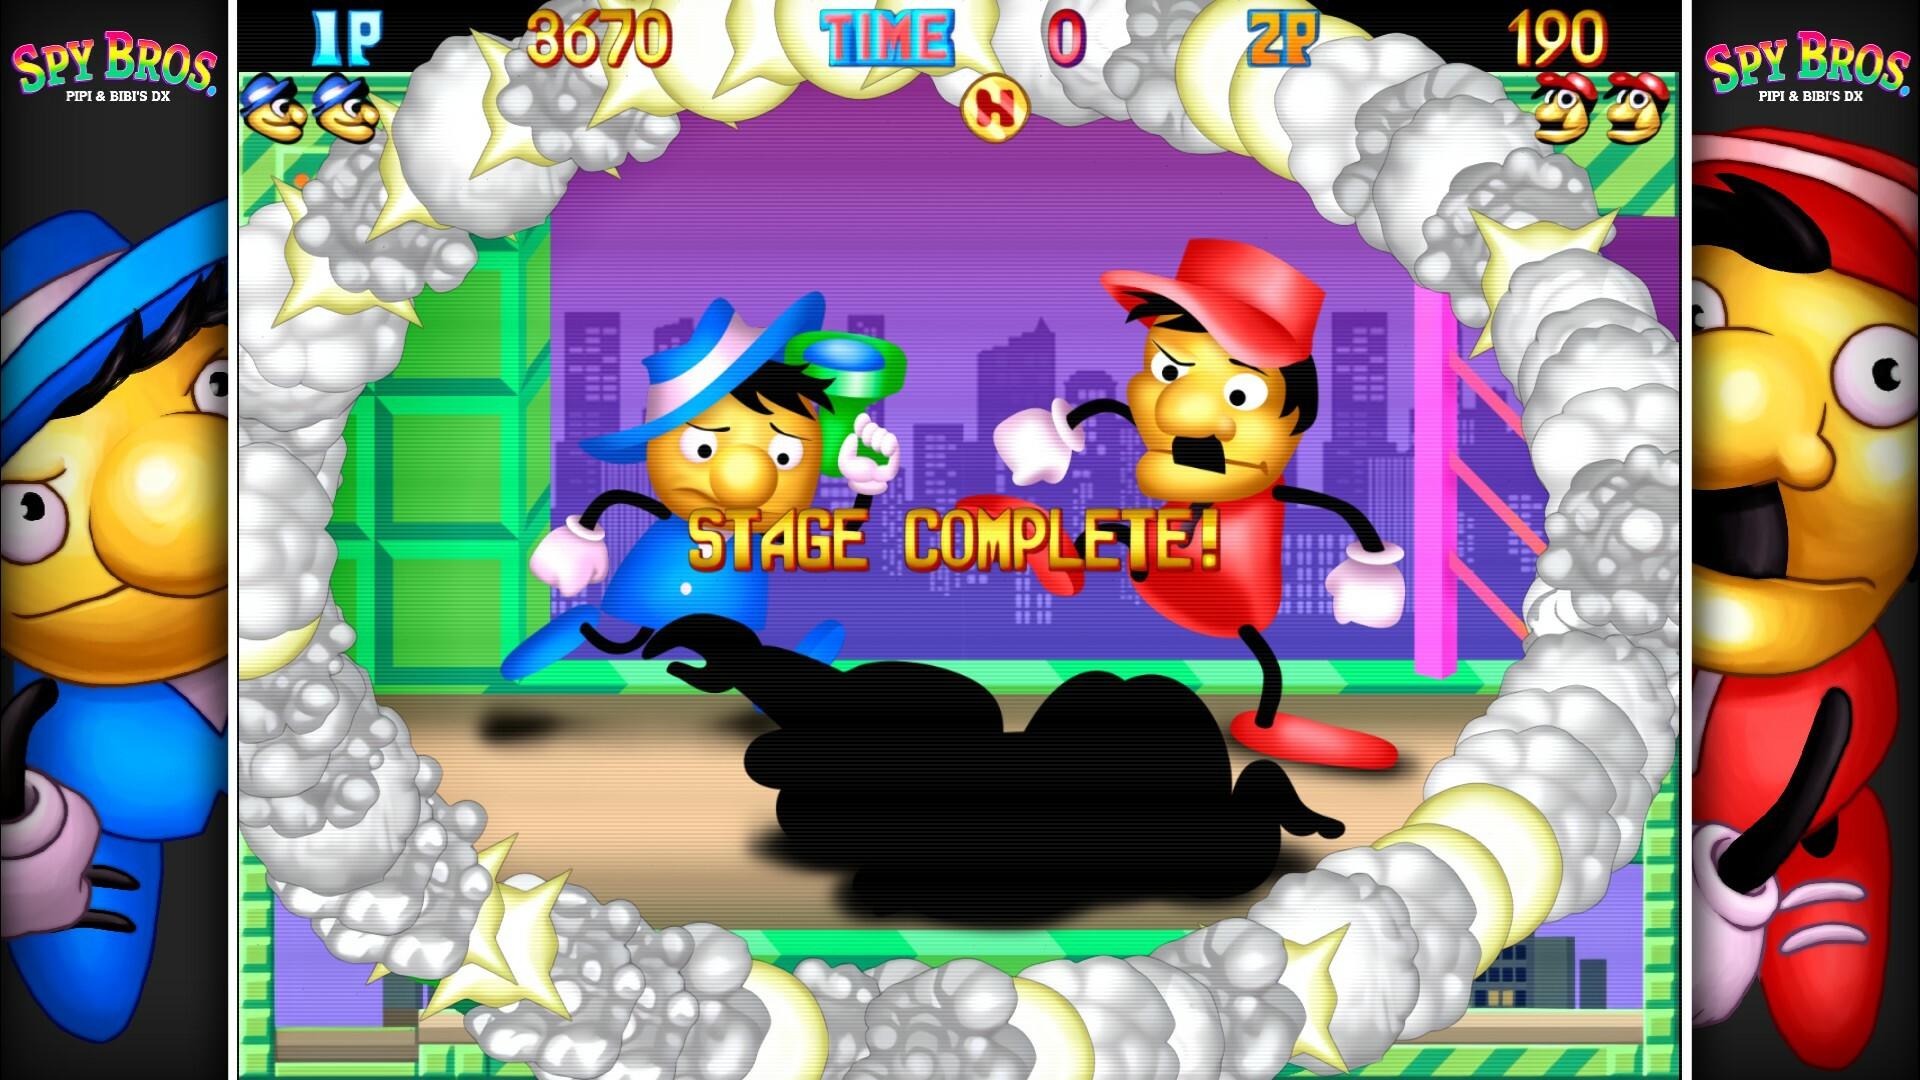 Spy Bros. (Pipi & Bibi's DX) screenshot game